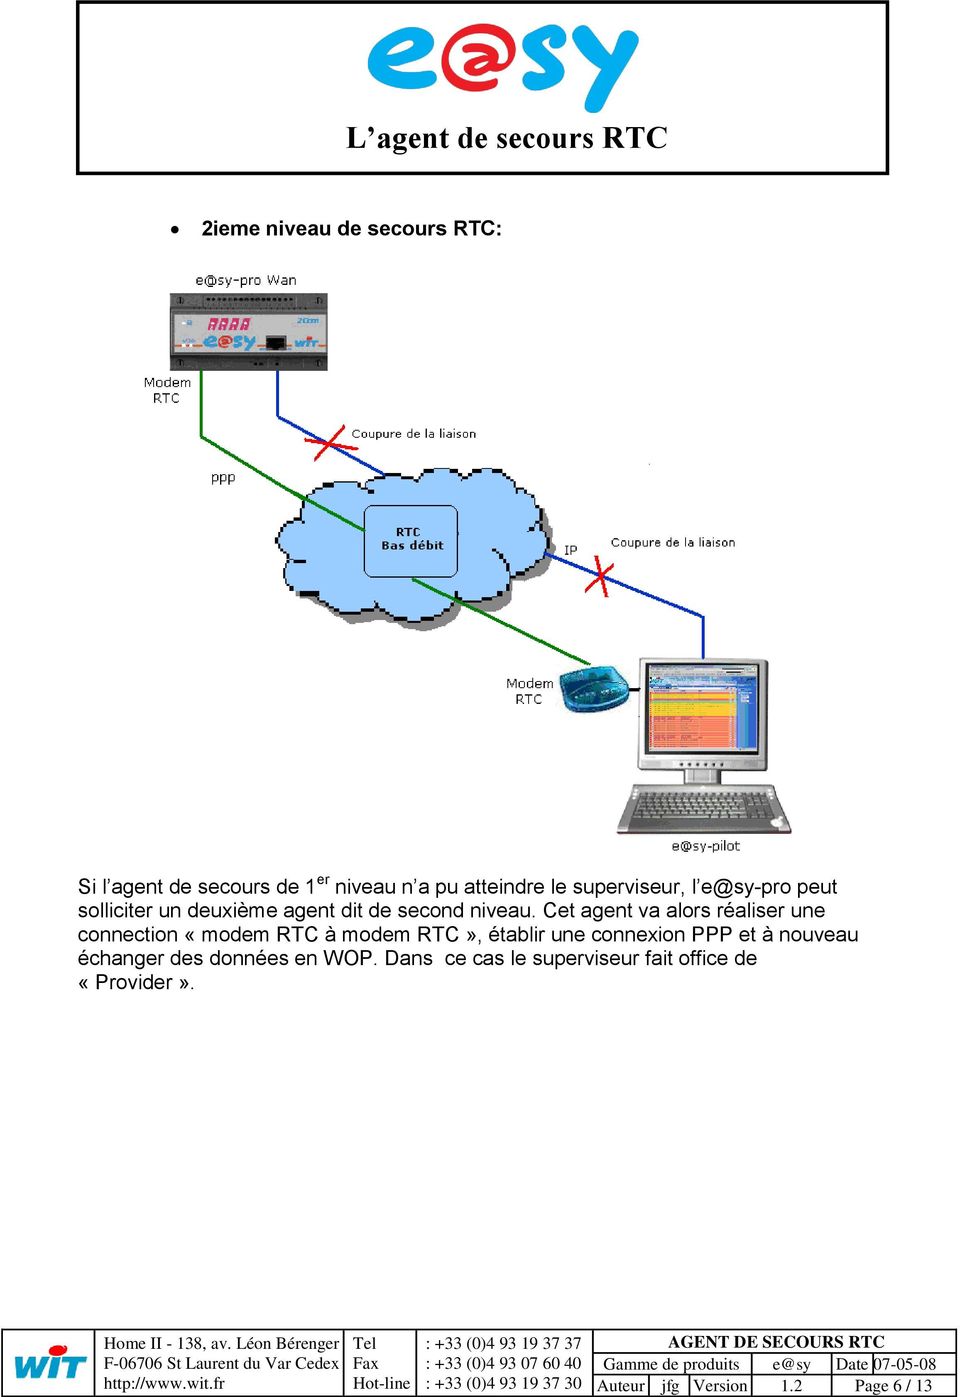 Cet agent va alors réaliser une connection «modem RTC à modem RTC», établir une connexion PPP et